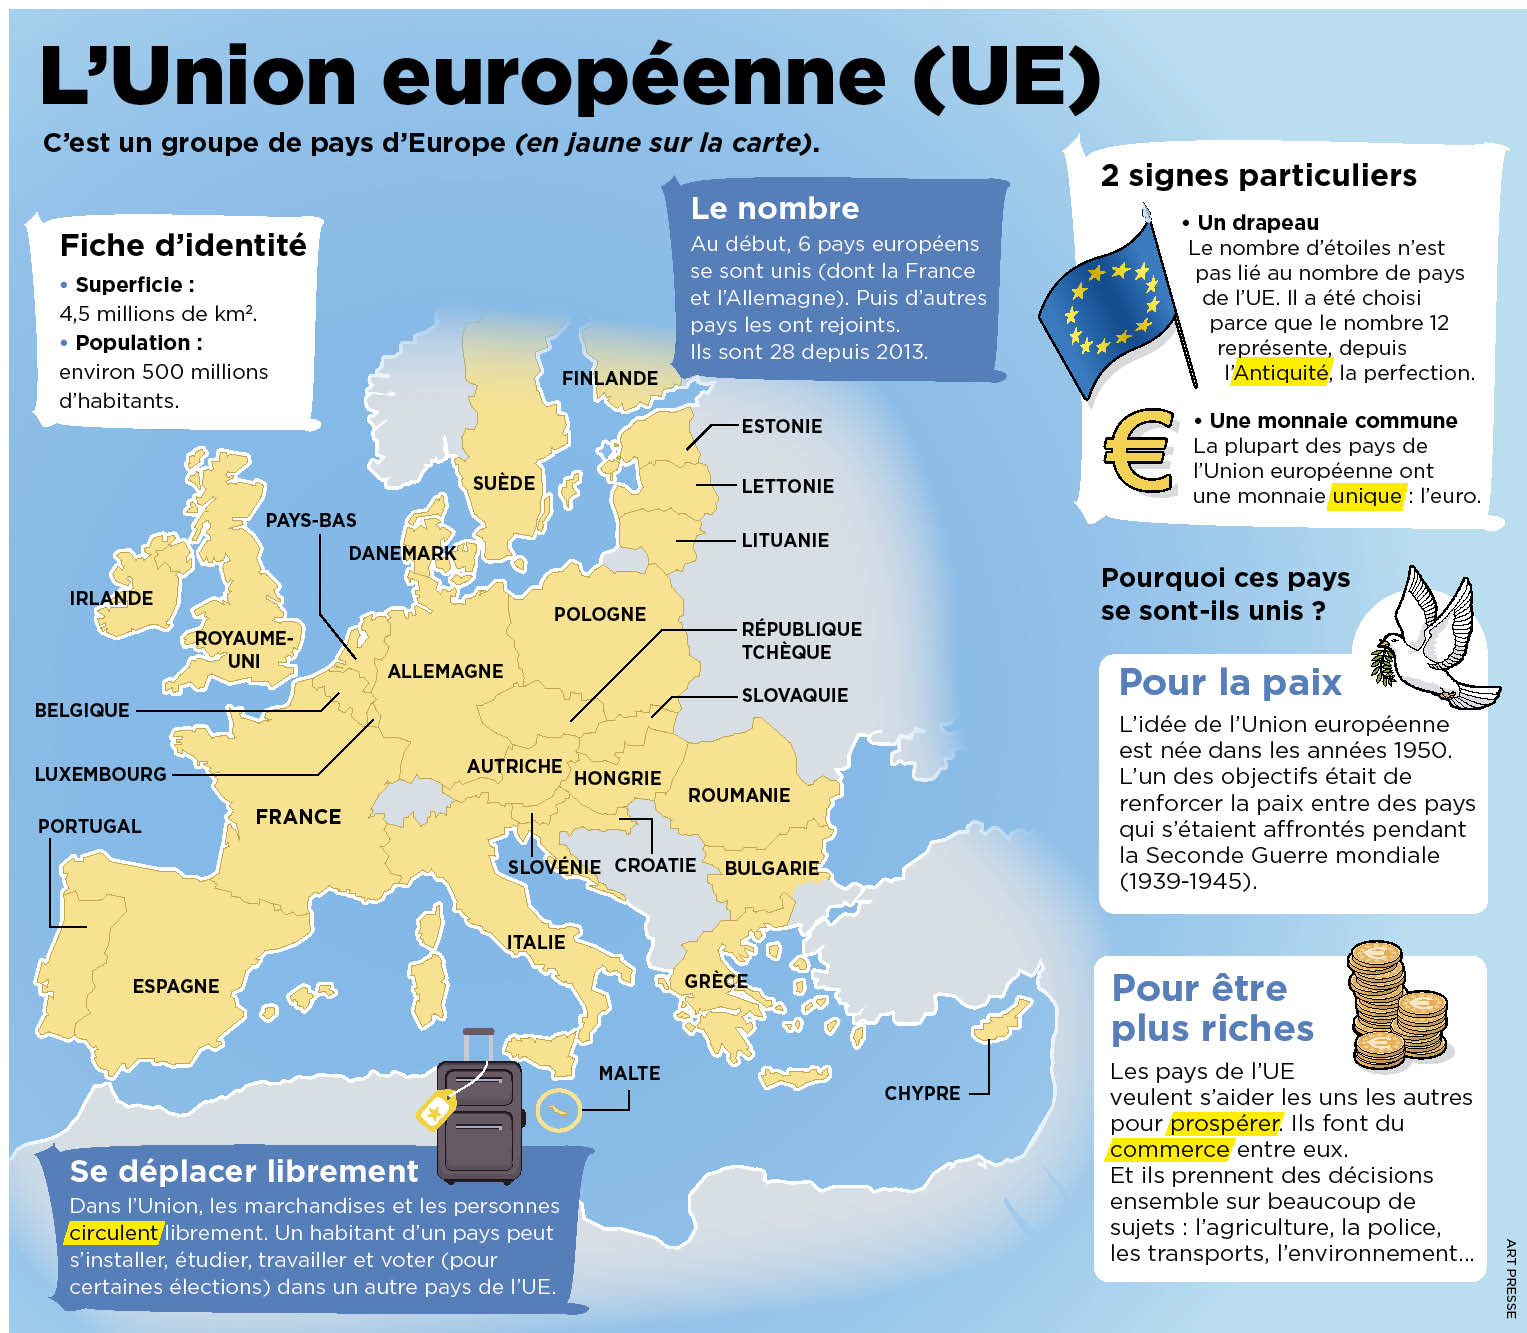 Qu'est-ce que l'Union européenne et pourquoi cela importe-t-il ?